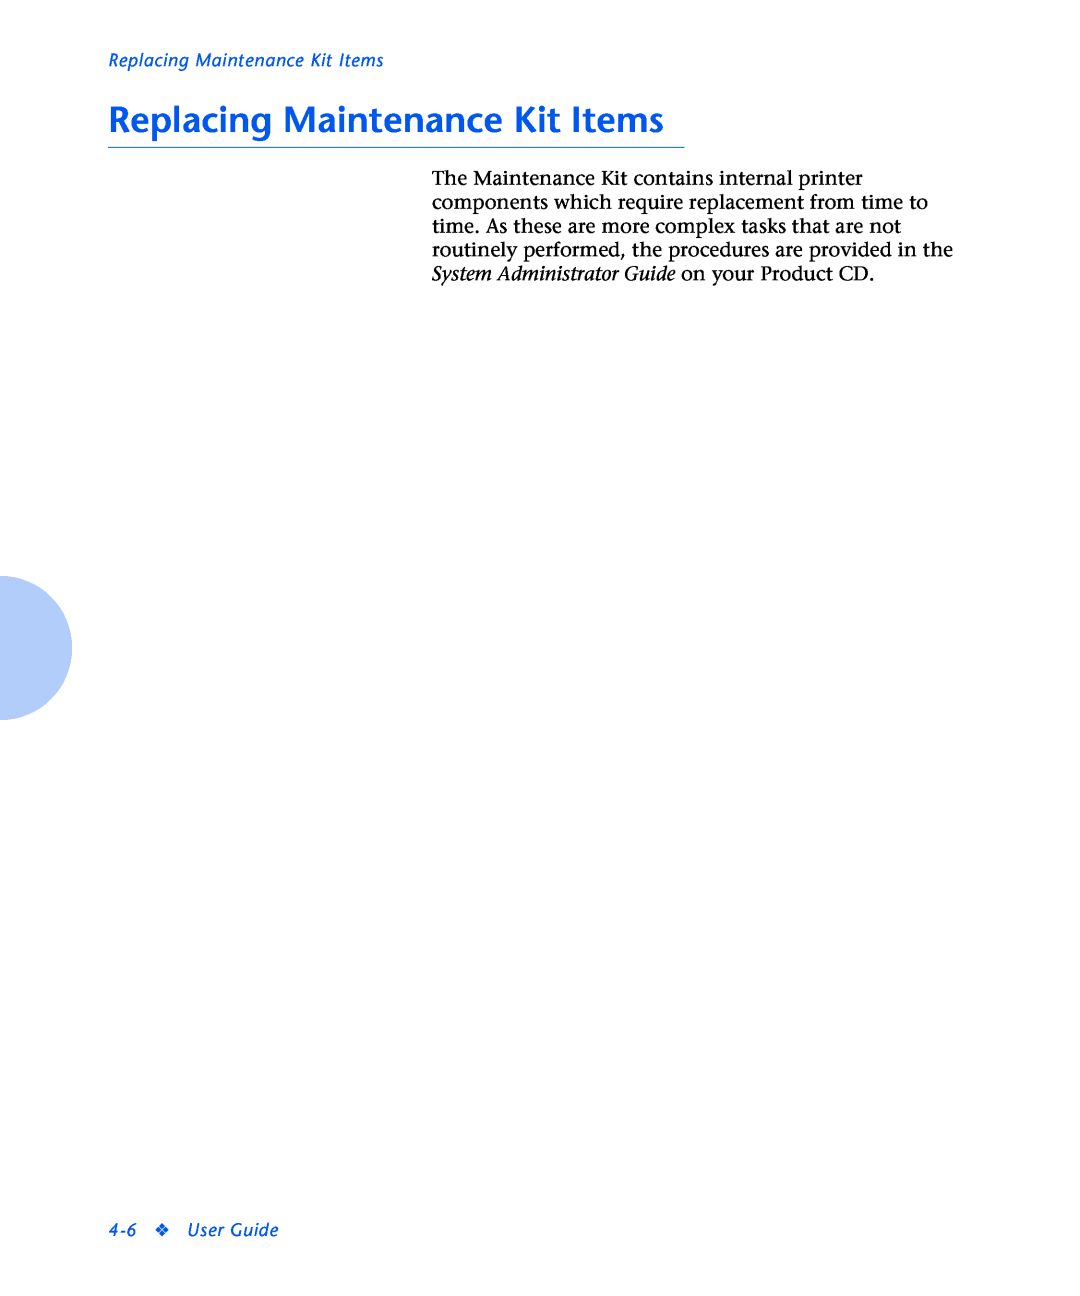 Xerox N2125 manual Replacing Maintenance Kit Items, User Guide 